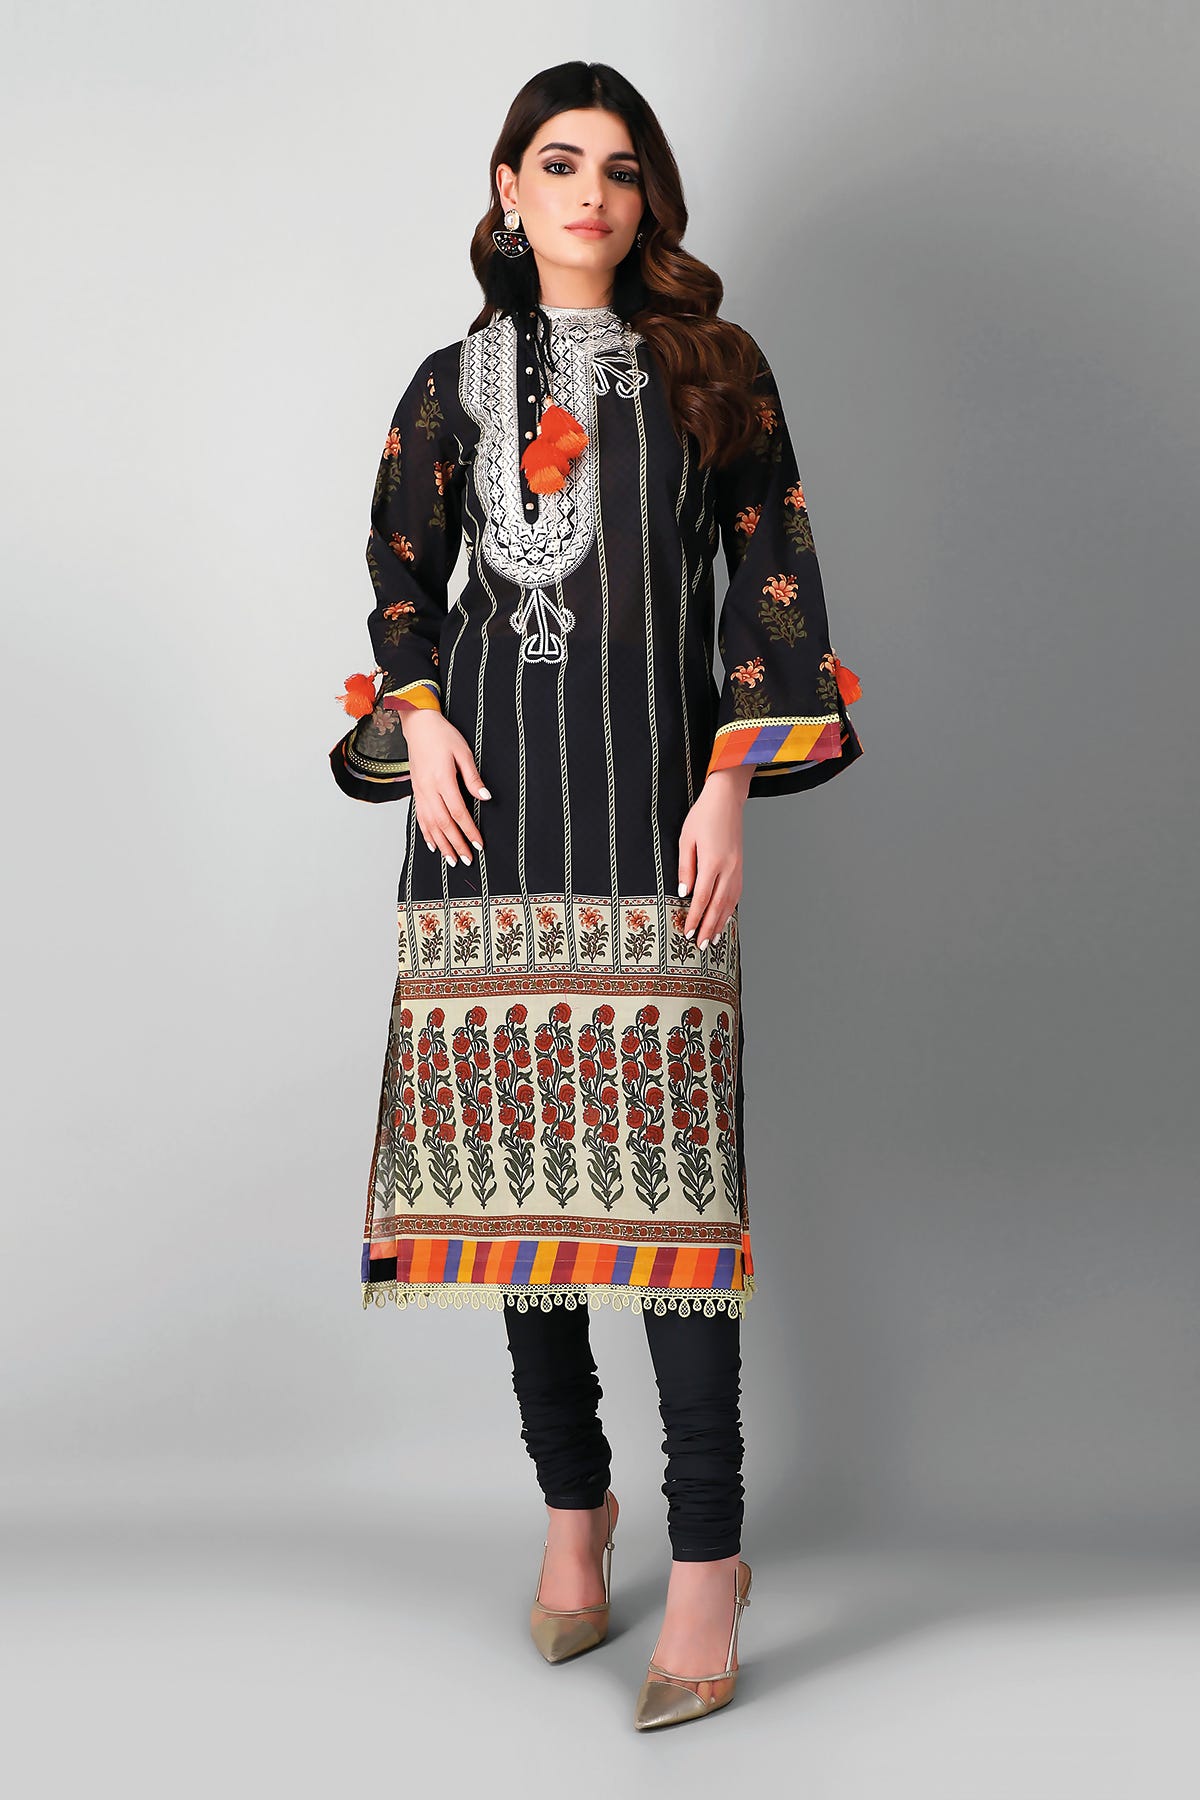 dresses-for-girls-Online-shopping-in-pakistan